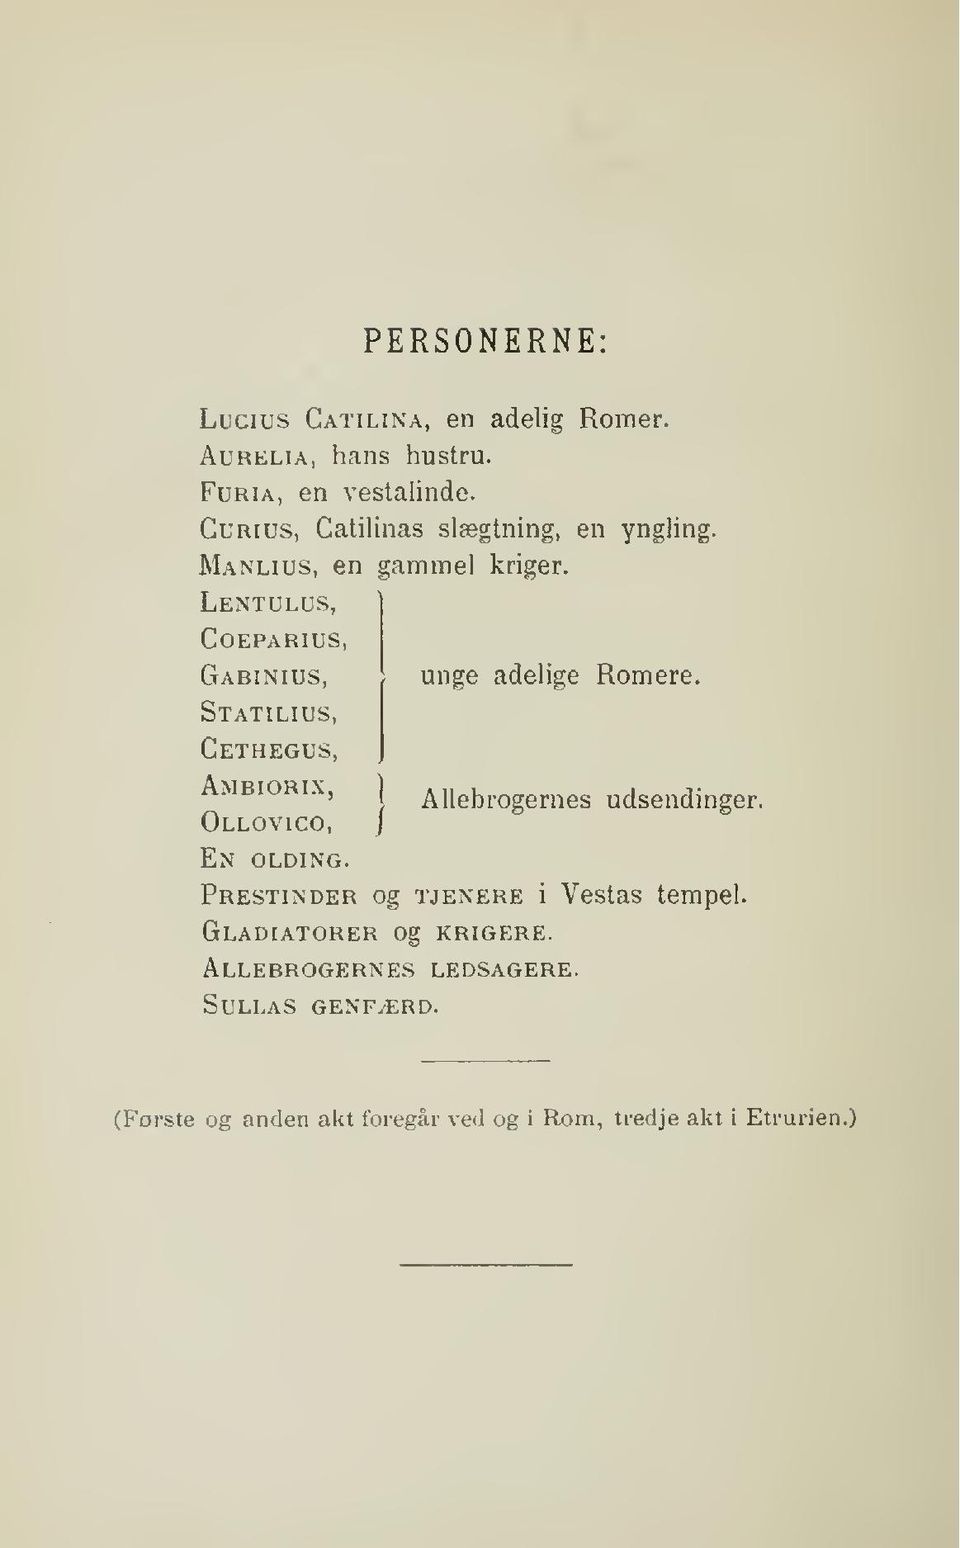 Lentulus, coeparius, Gabinius, Statilius, Cethegus, unge adelige Romere. Ambiorix, Allebrogernes udsendinger.